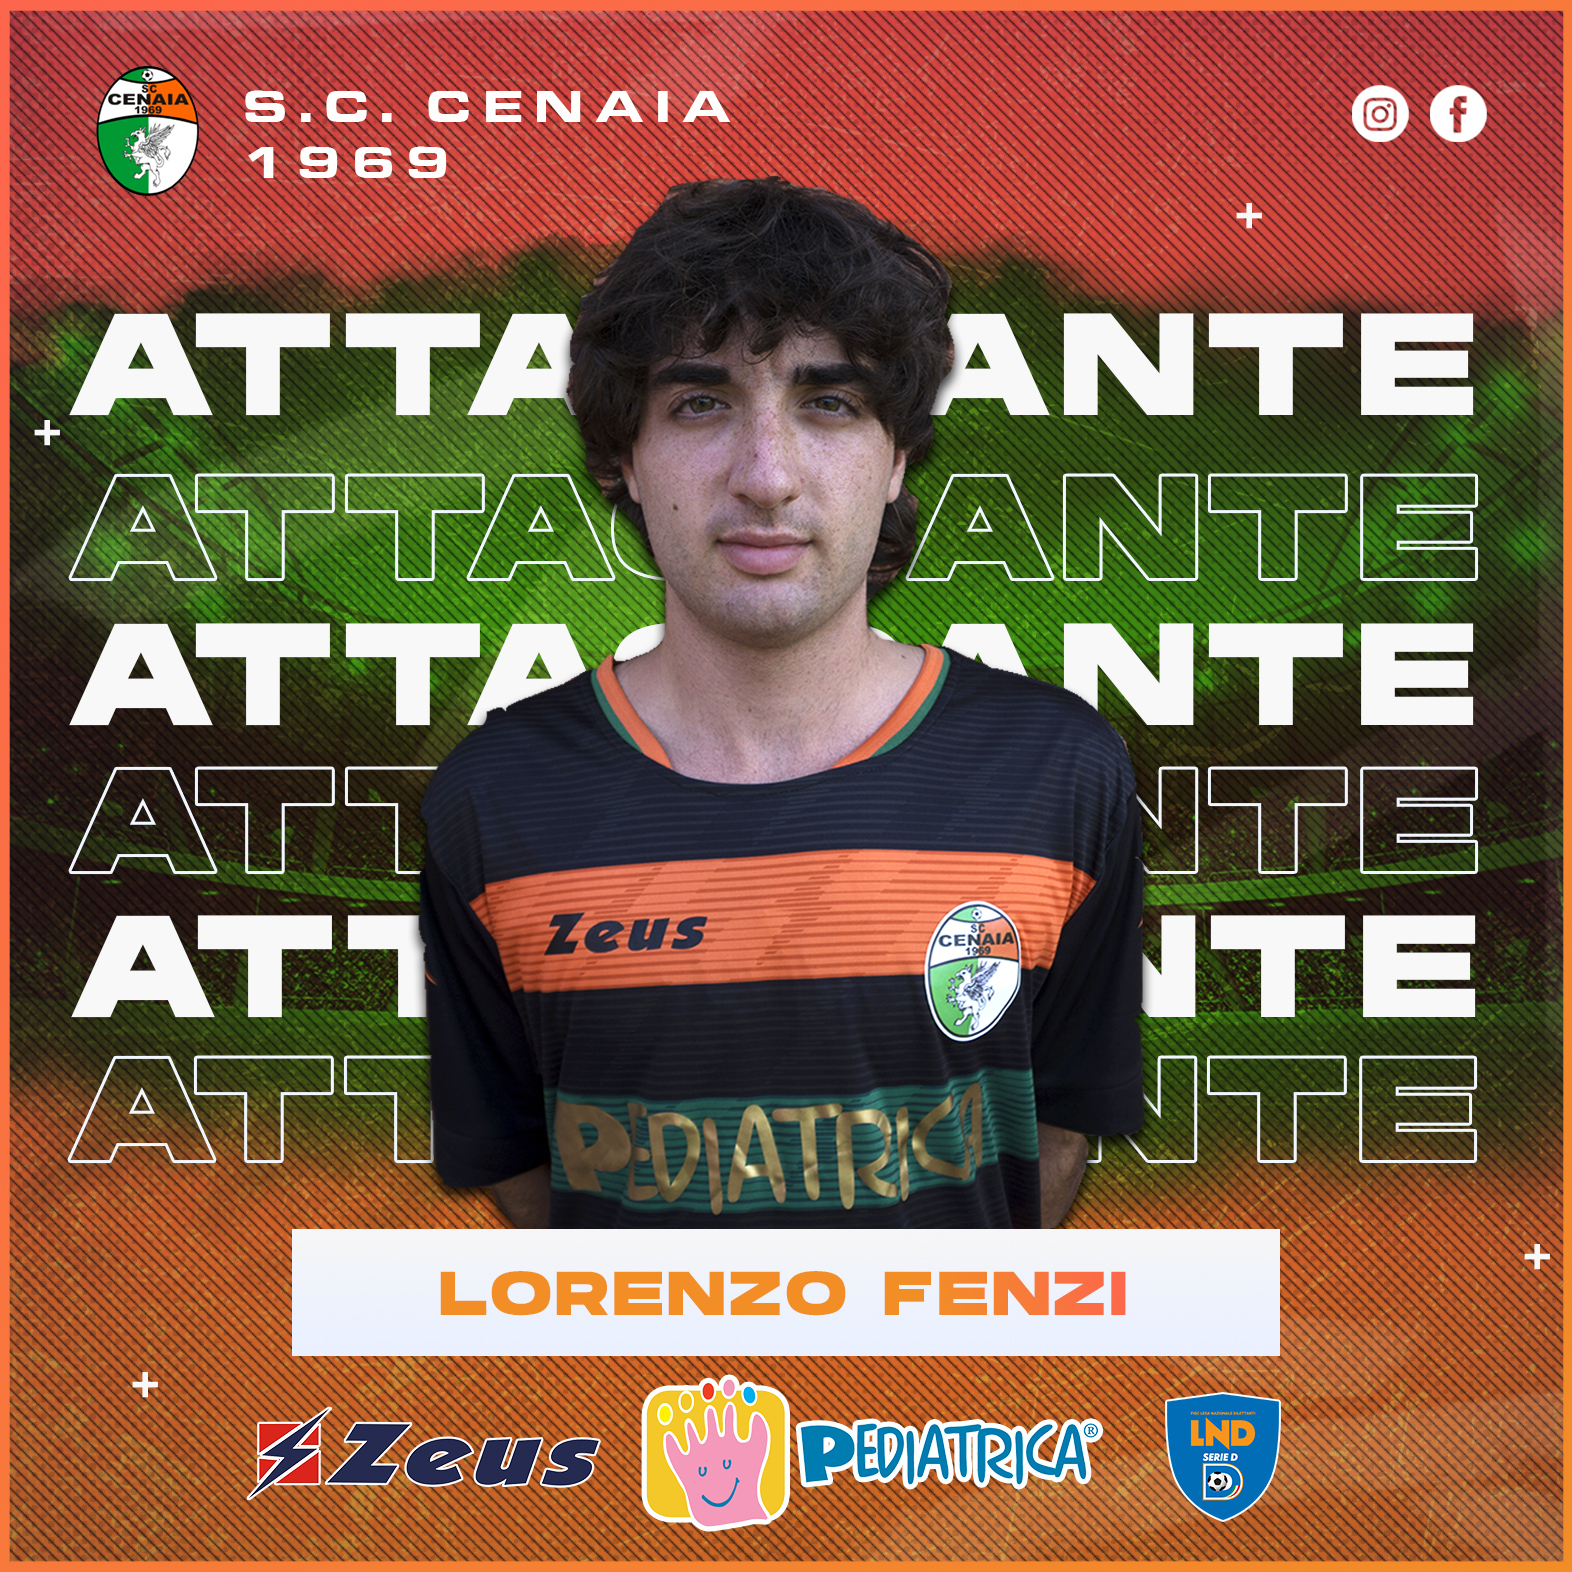 Lorenzo Fenzi